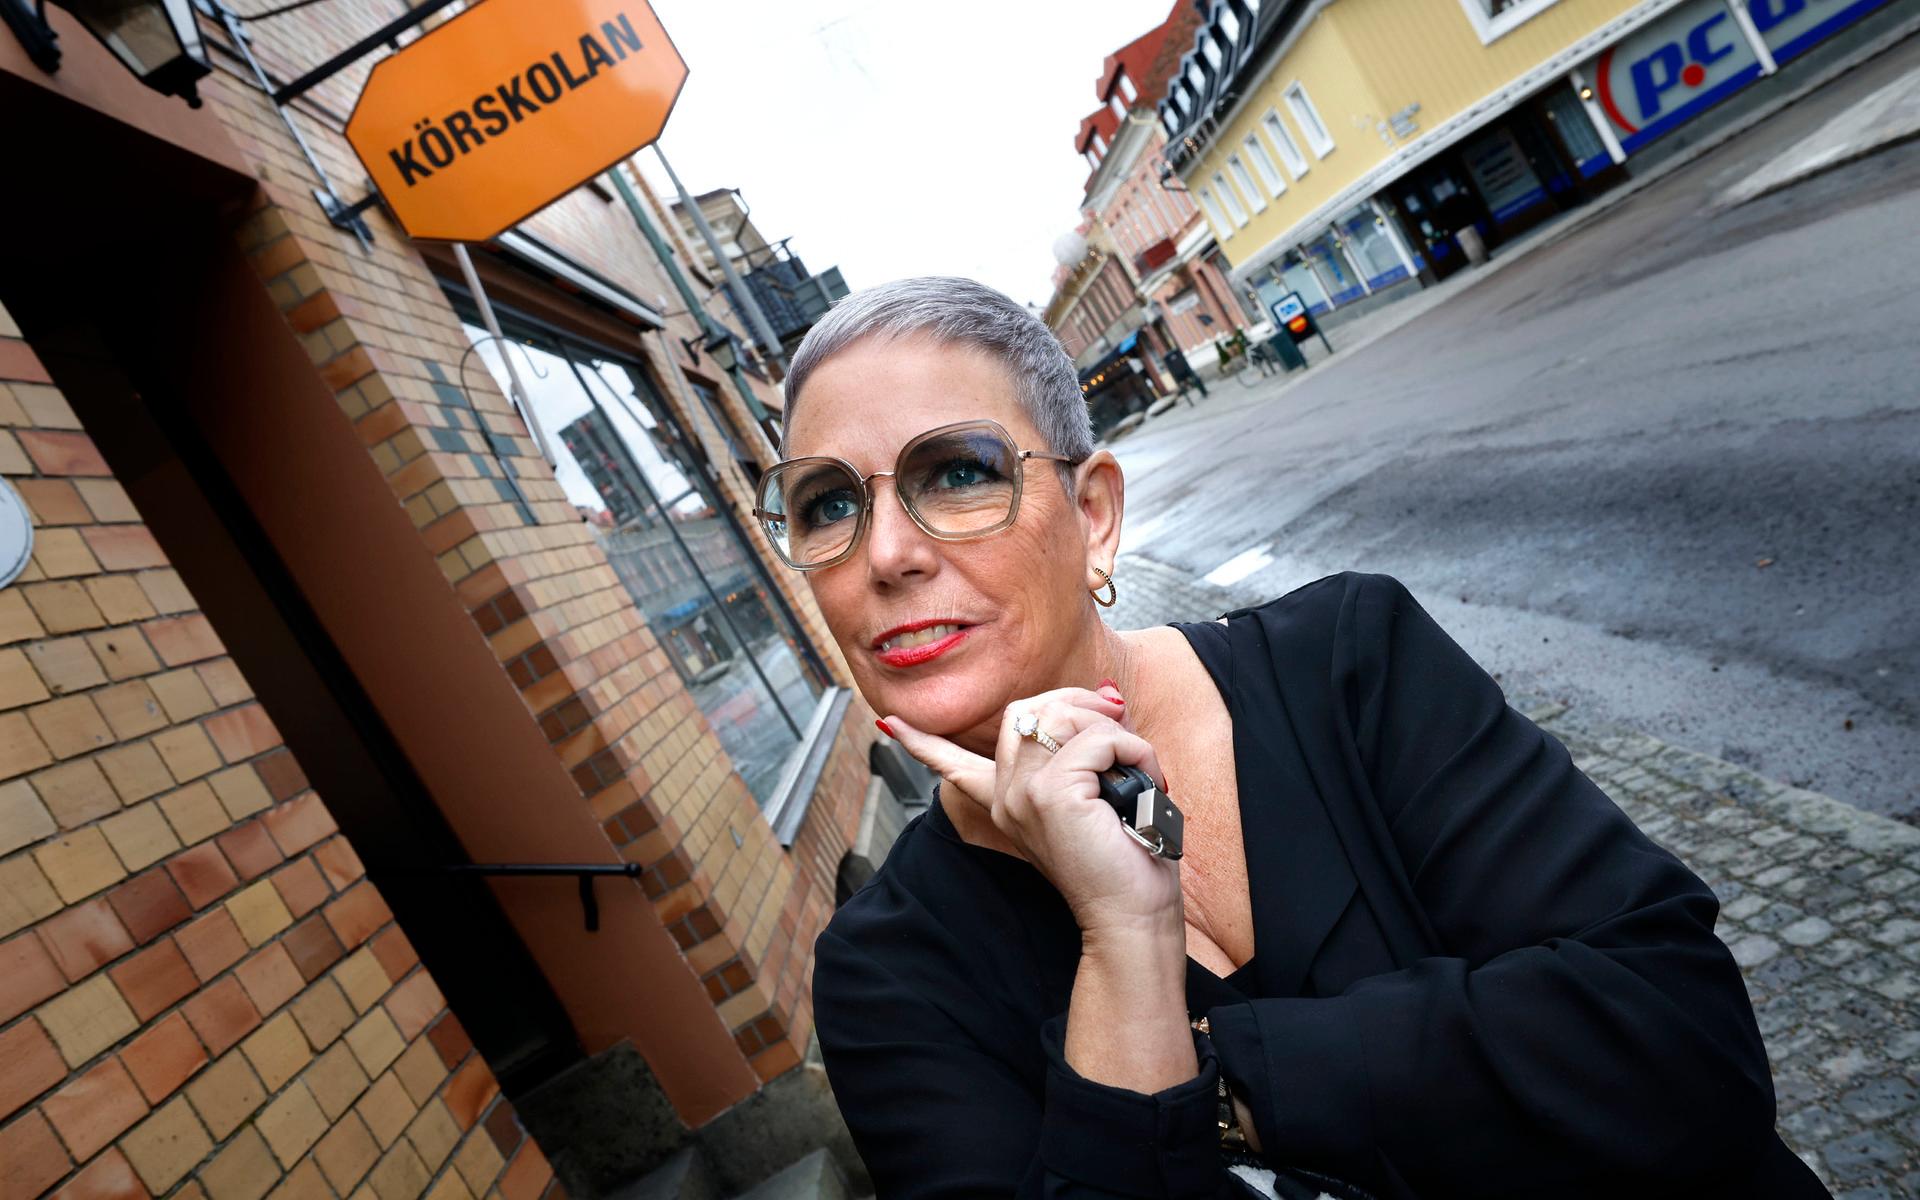 Vi träffar Pernilla Theorin på Körskolan i Varberg. Snart syns hon i TV-rutan som en av domarna i Sveriges värsta bilförare.